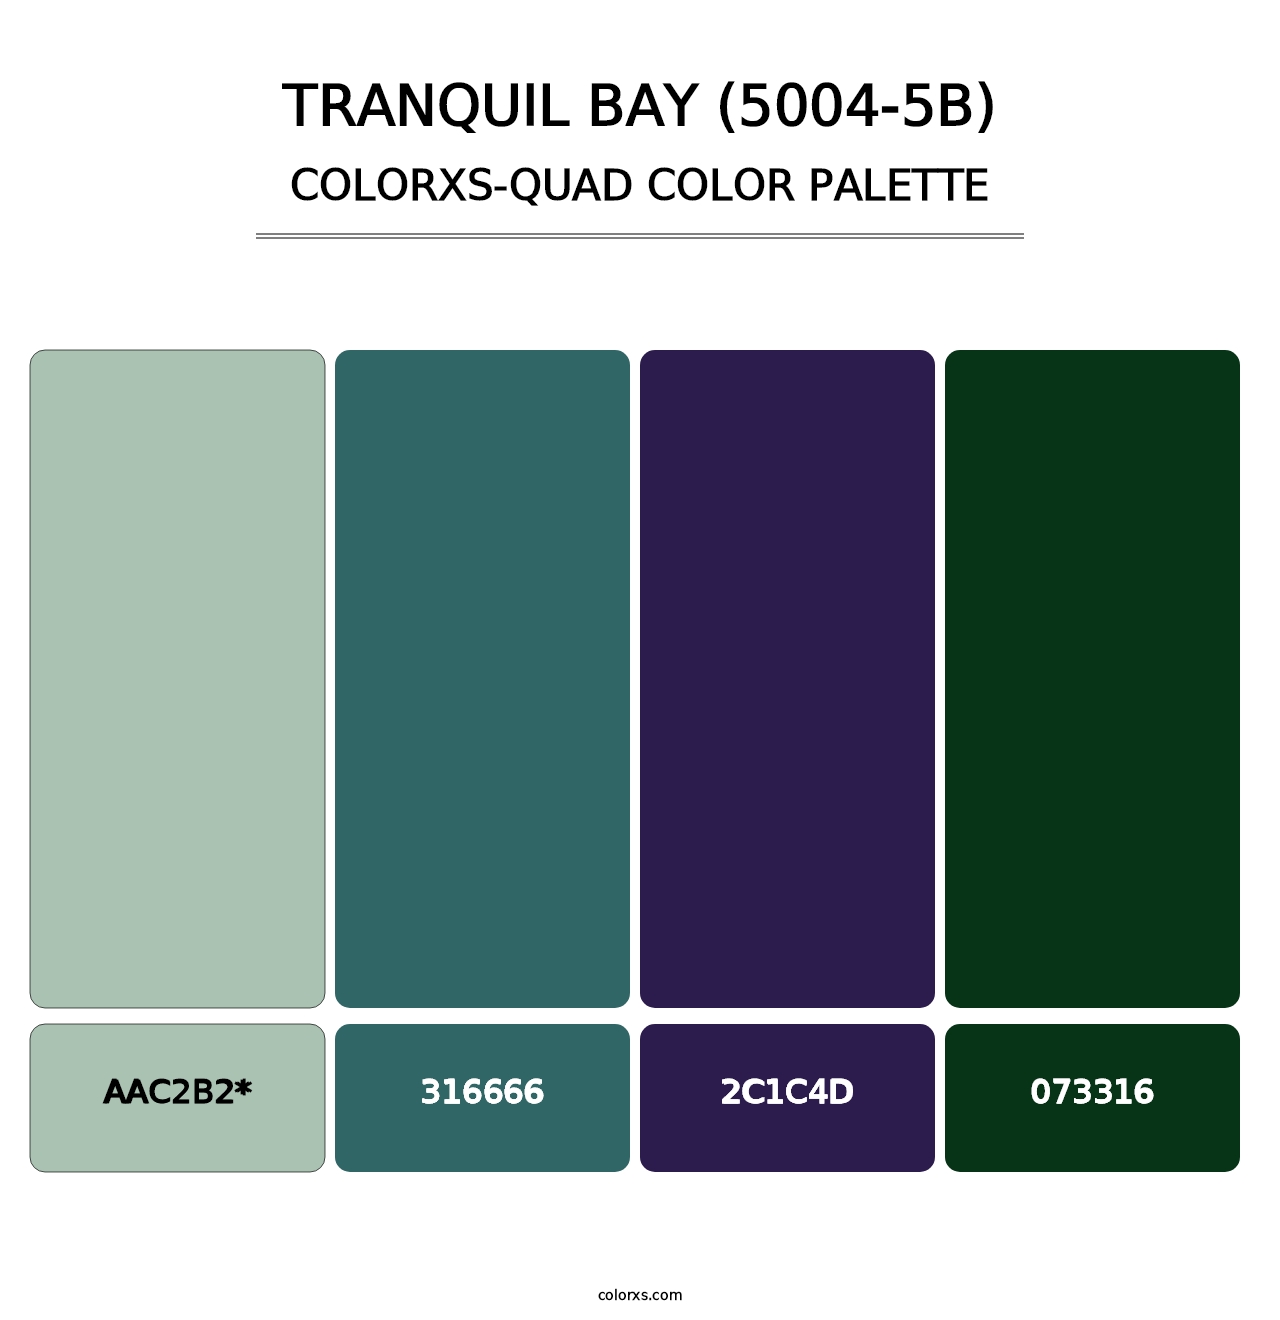 Tranquil Bay (5004-5B) - Colorxs Quad Palette